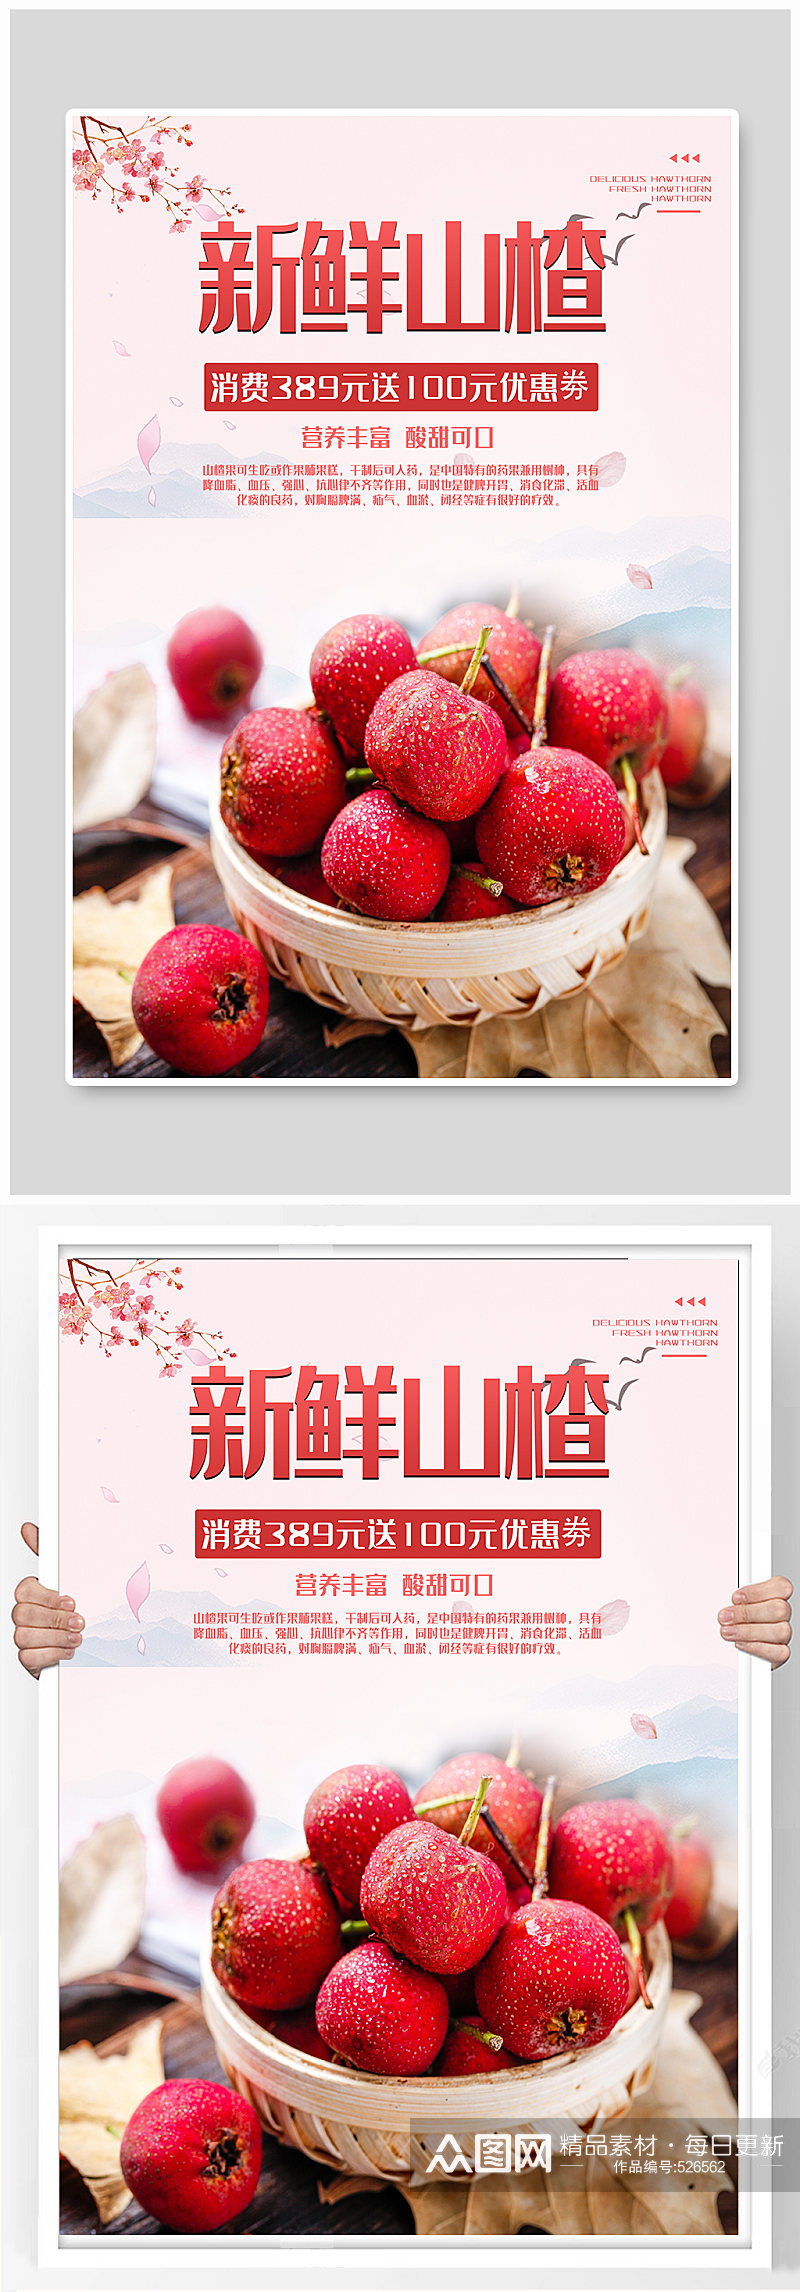 秋季山楂应季水果宣传海报素材